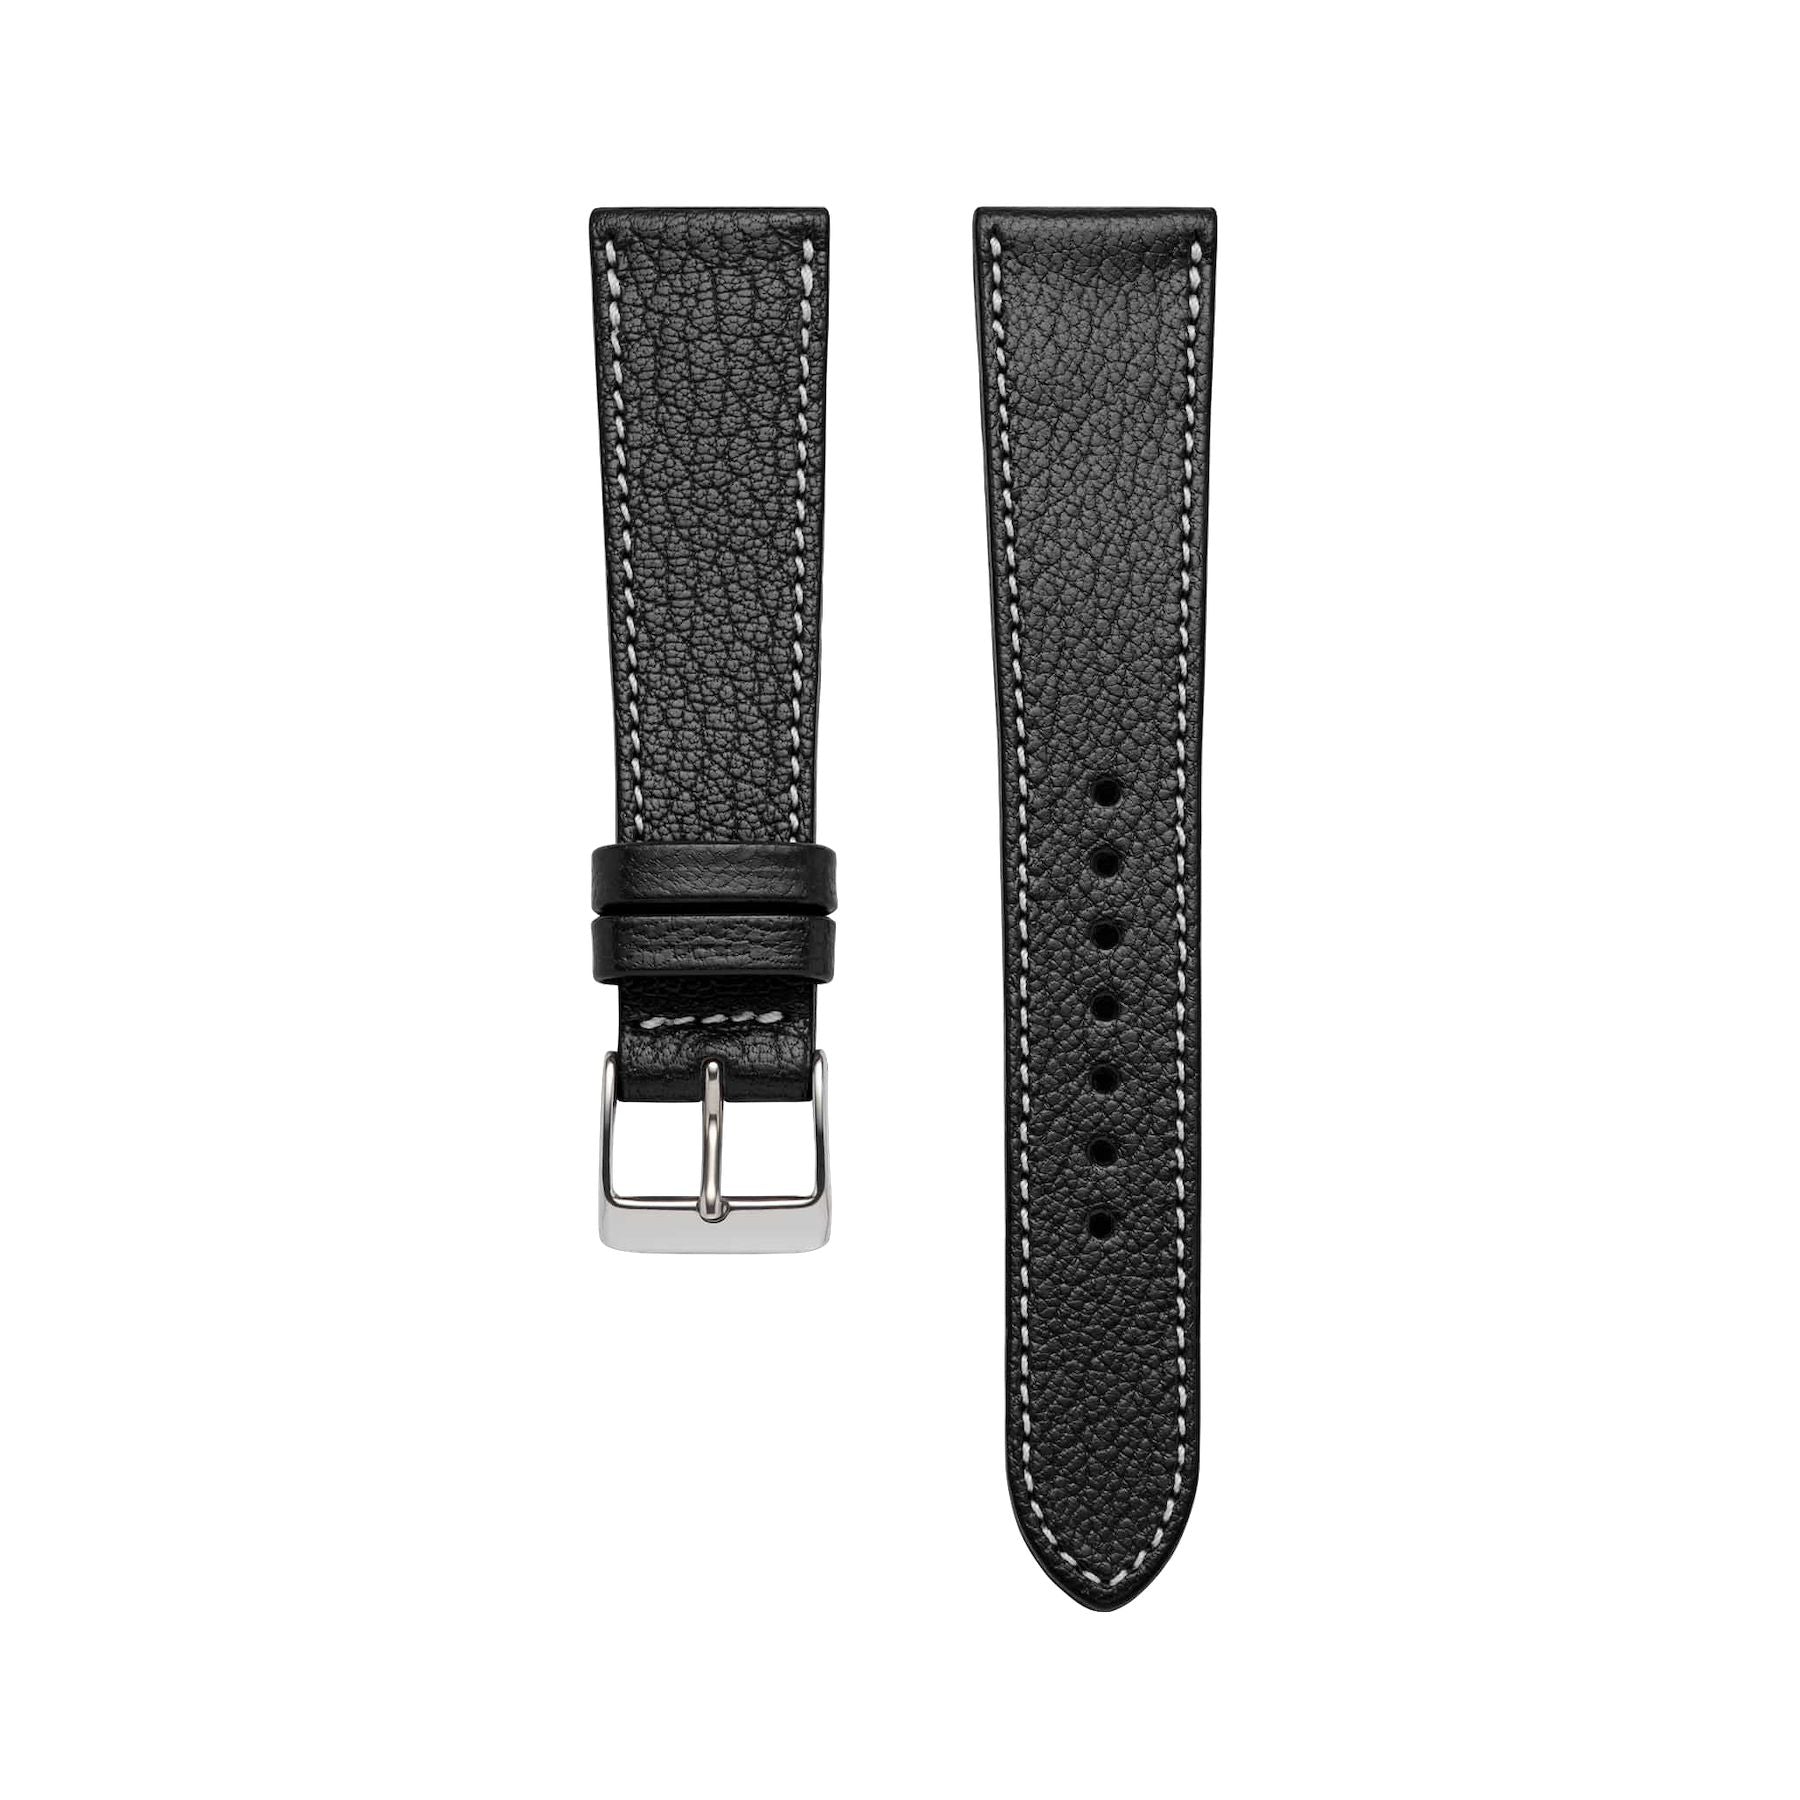 Goat Leather Slim | Armband aus Ziegenleder kompatibel mit Apple Watch-Schwarz-BerlinBravo